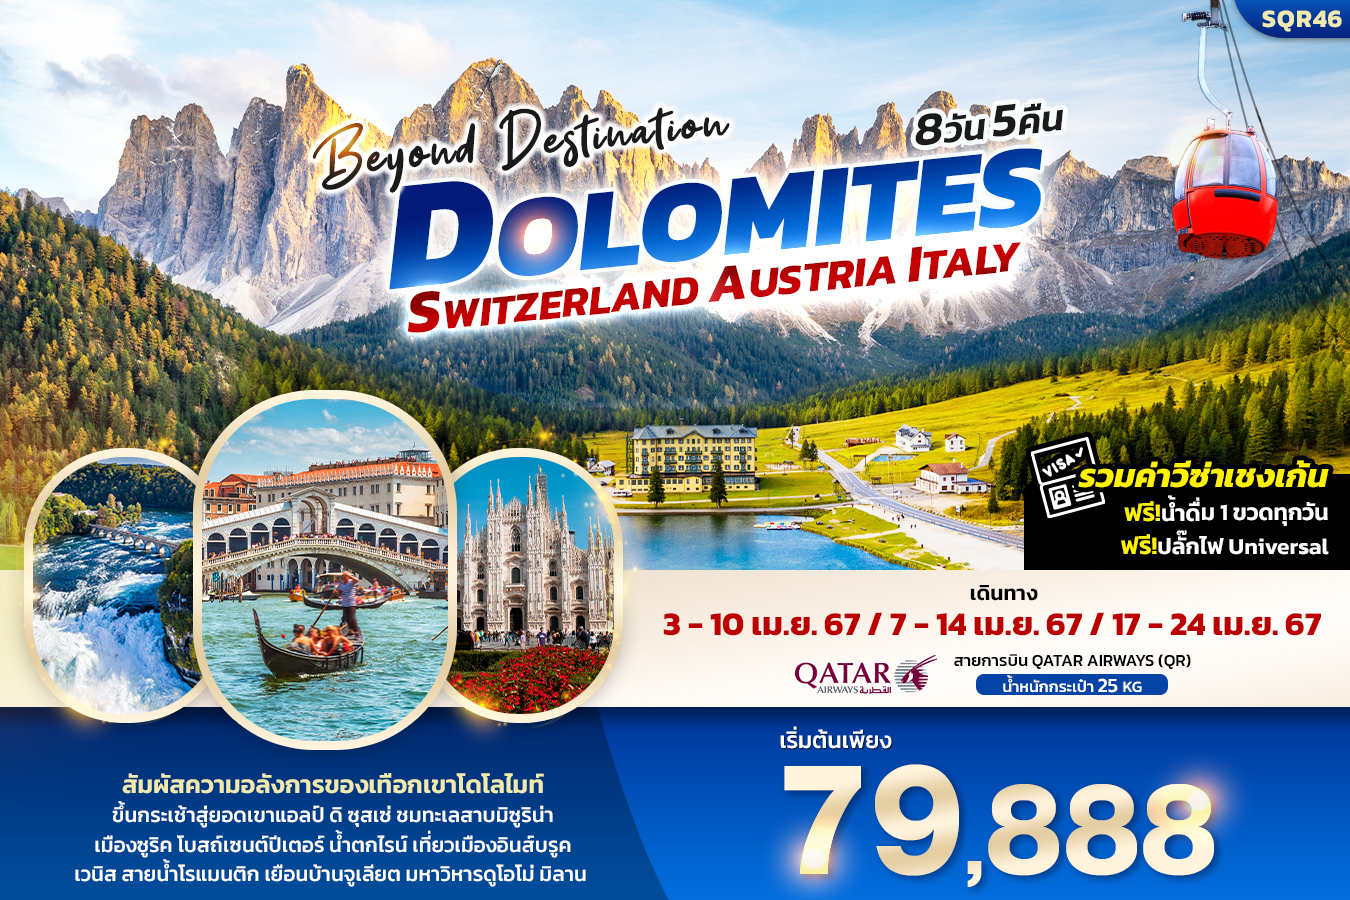 Beyond Destination Dolomite Switzerland Austria Italy 8วัน 5คืน (QR)